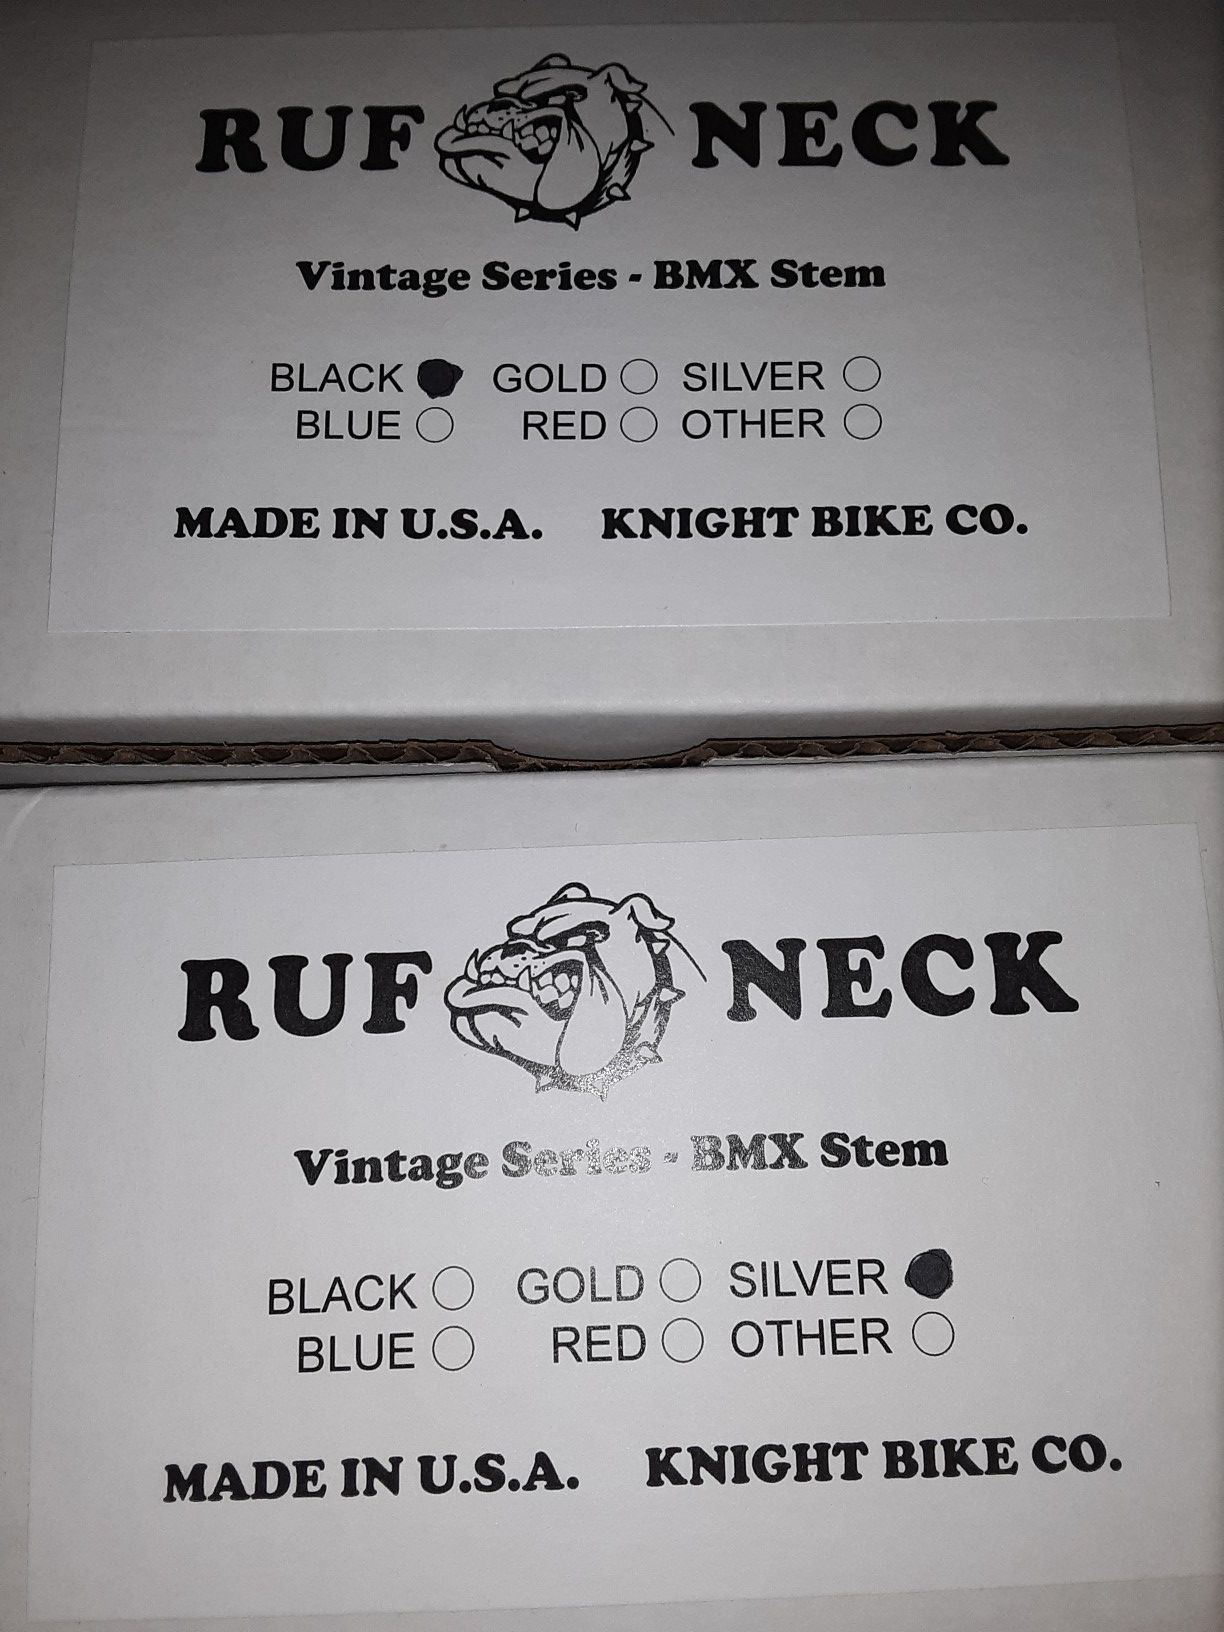 Ruf neck bmx stems